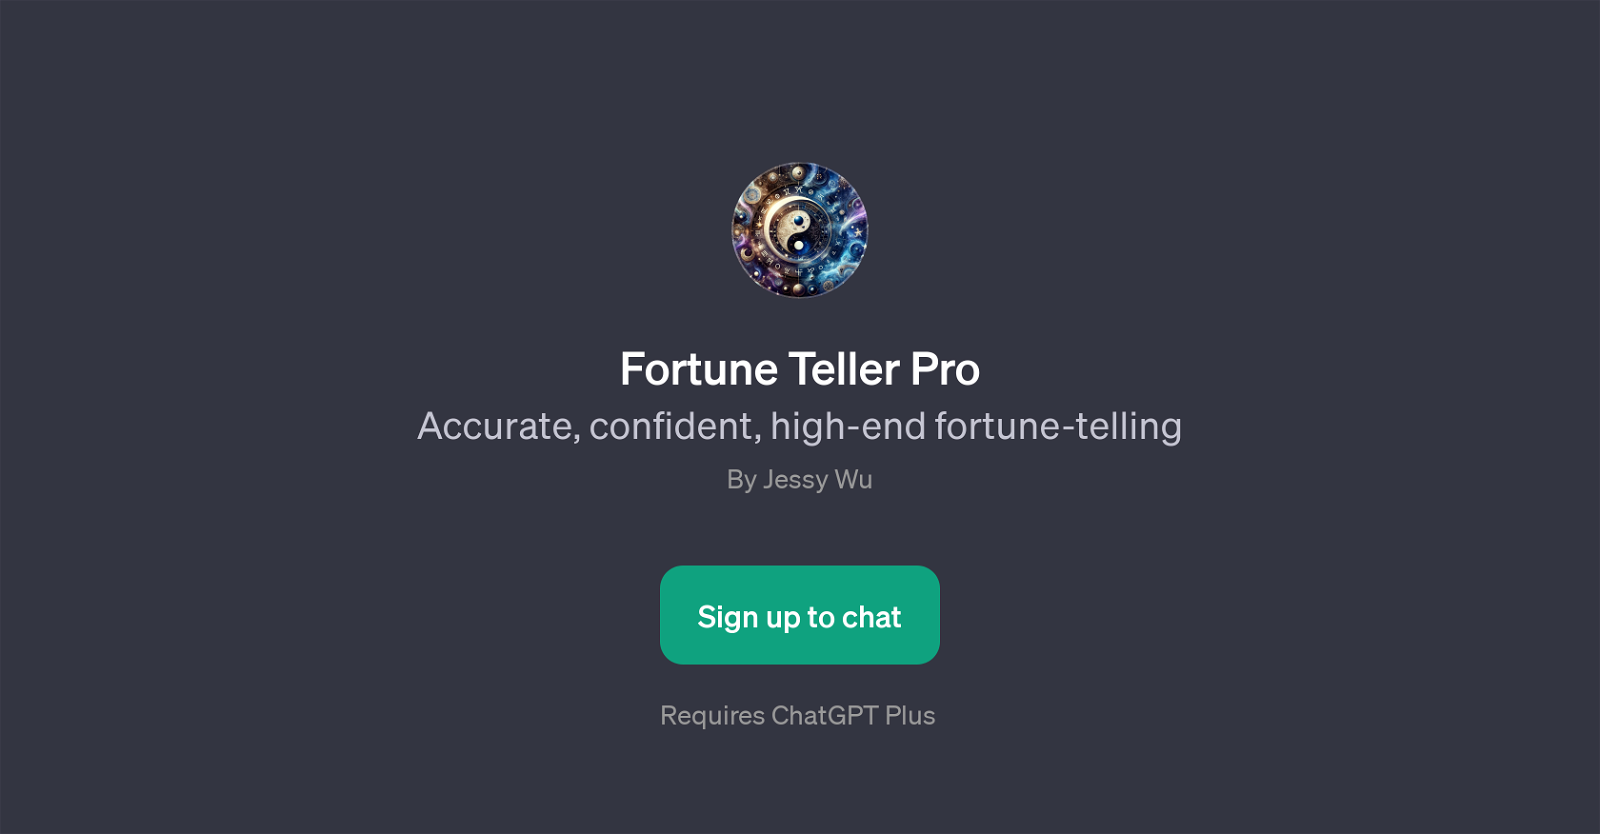 Fortune Teller Pro website